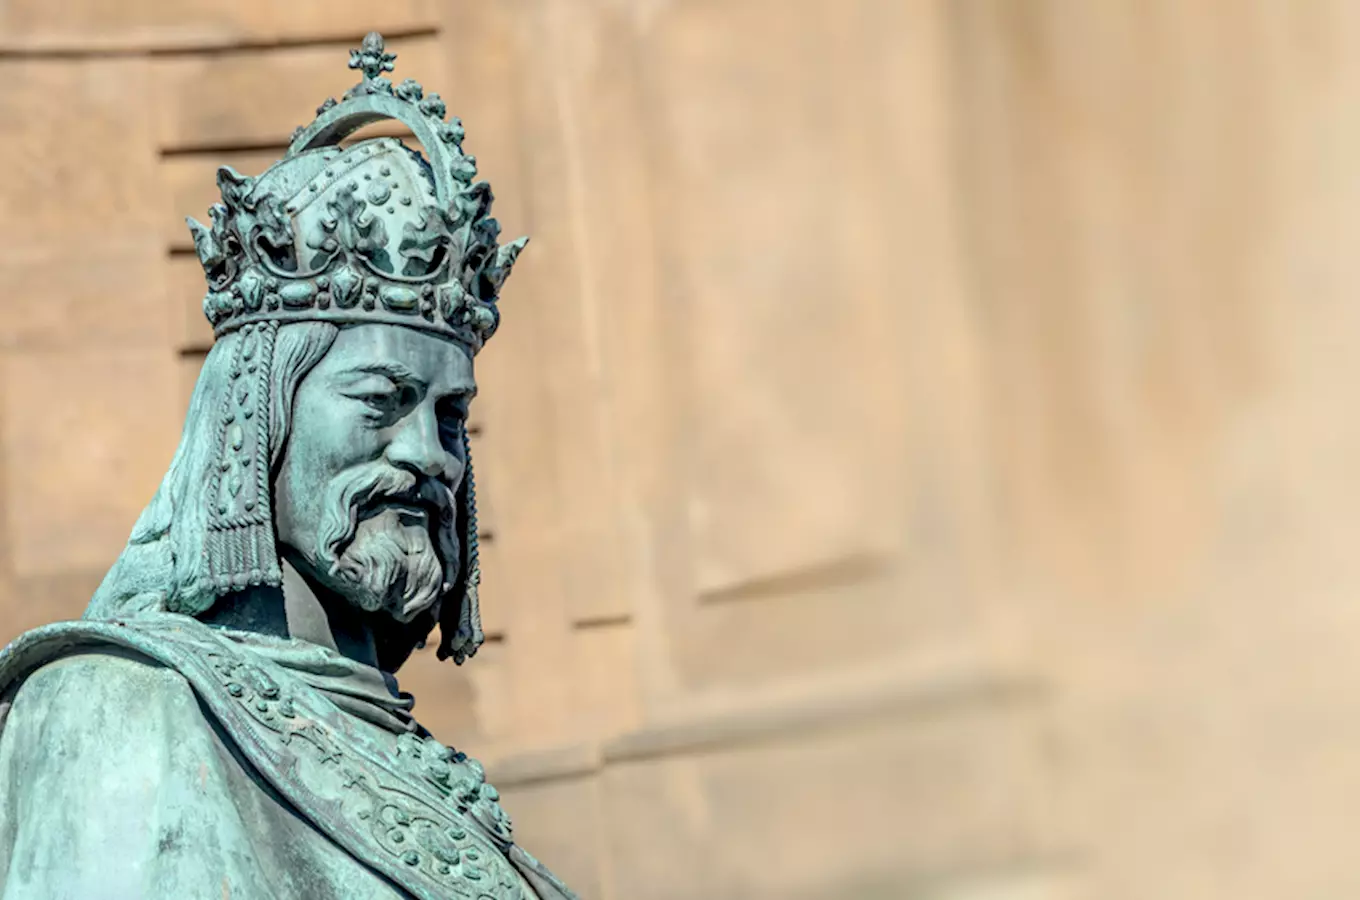 Karel IV., rytíř i zbožný sběratel ostatků, se narodil před 708 lety